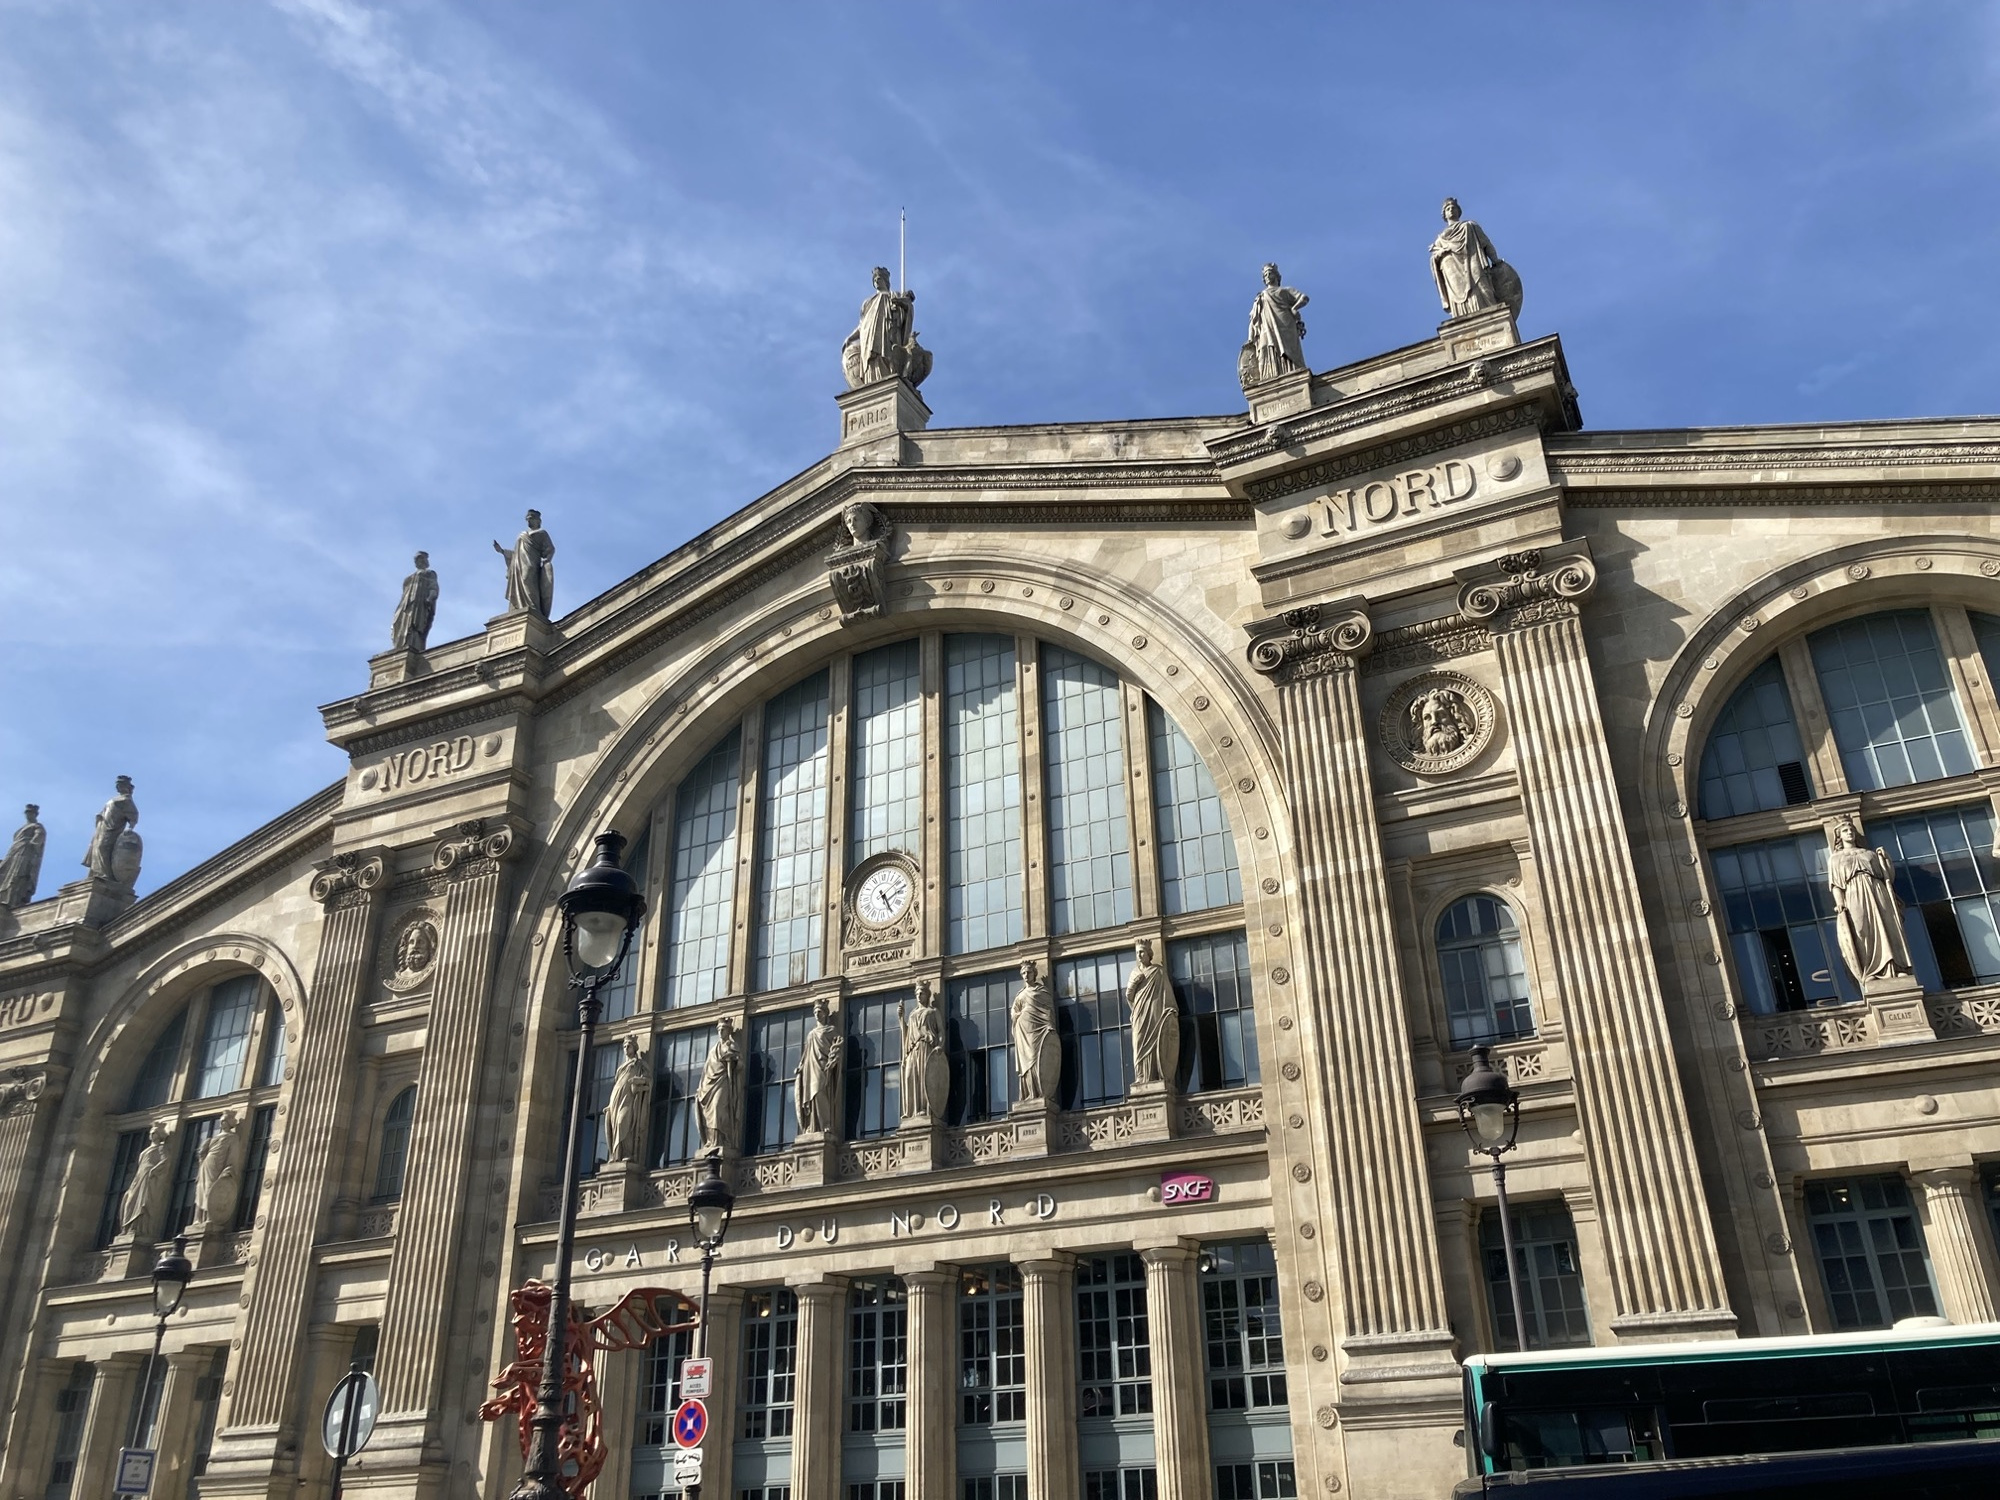 Bahnhofsgebäude des Gare du Nord, das Gebäude ist mit vielen Säulen und Statuen dekoriert und hat über dem Eingangsportal ein Glasfenster mit einer Uhr